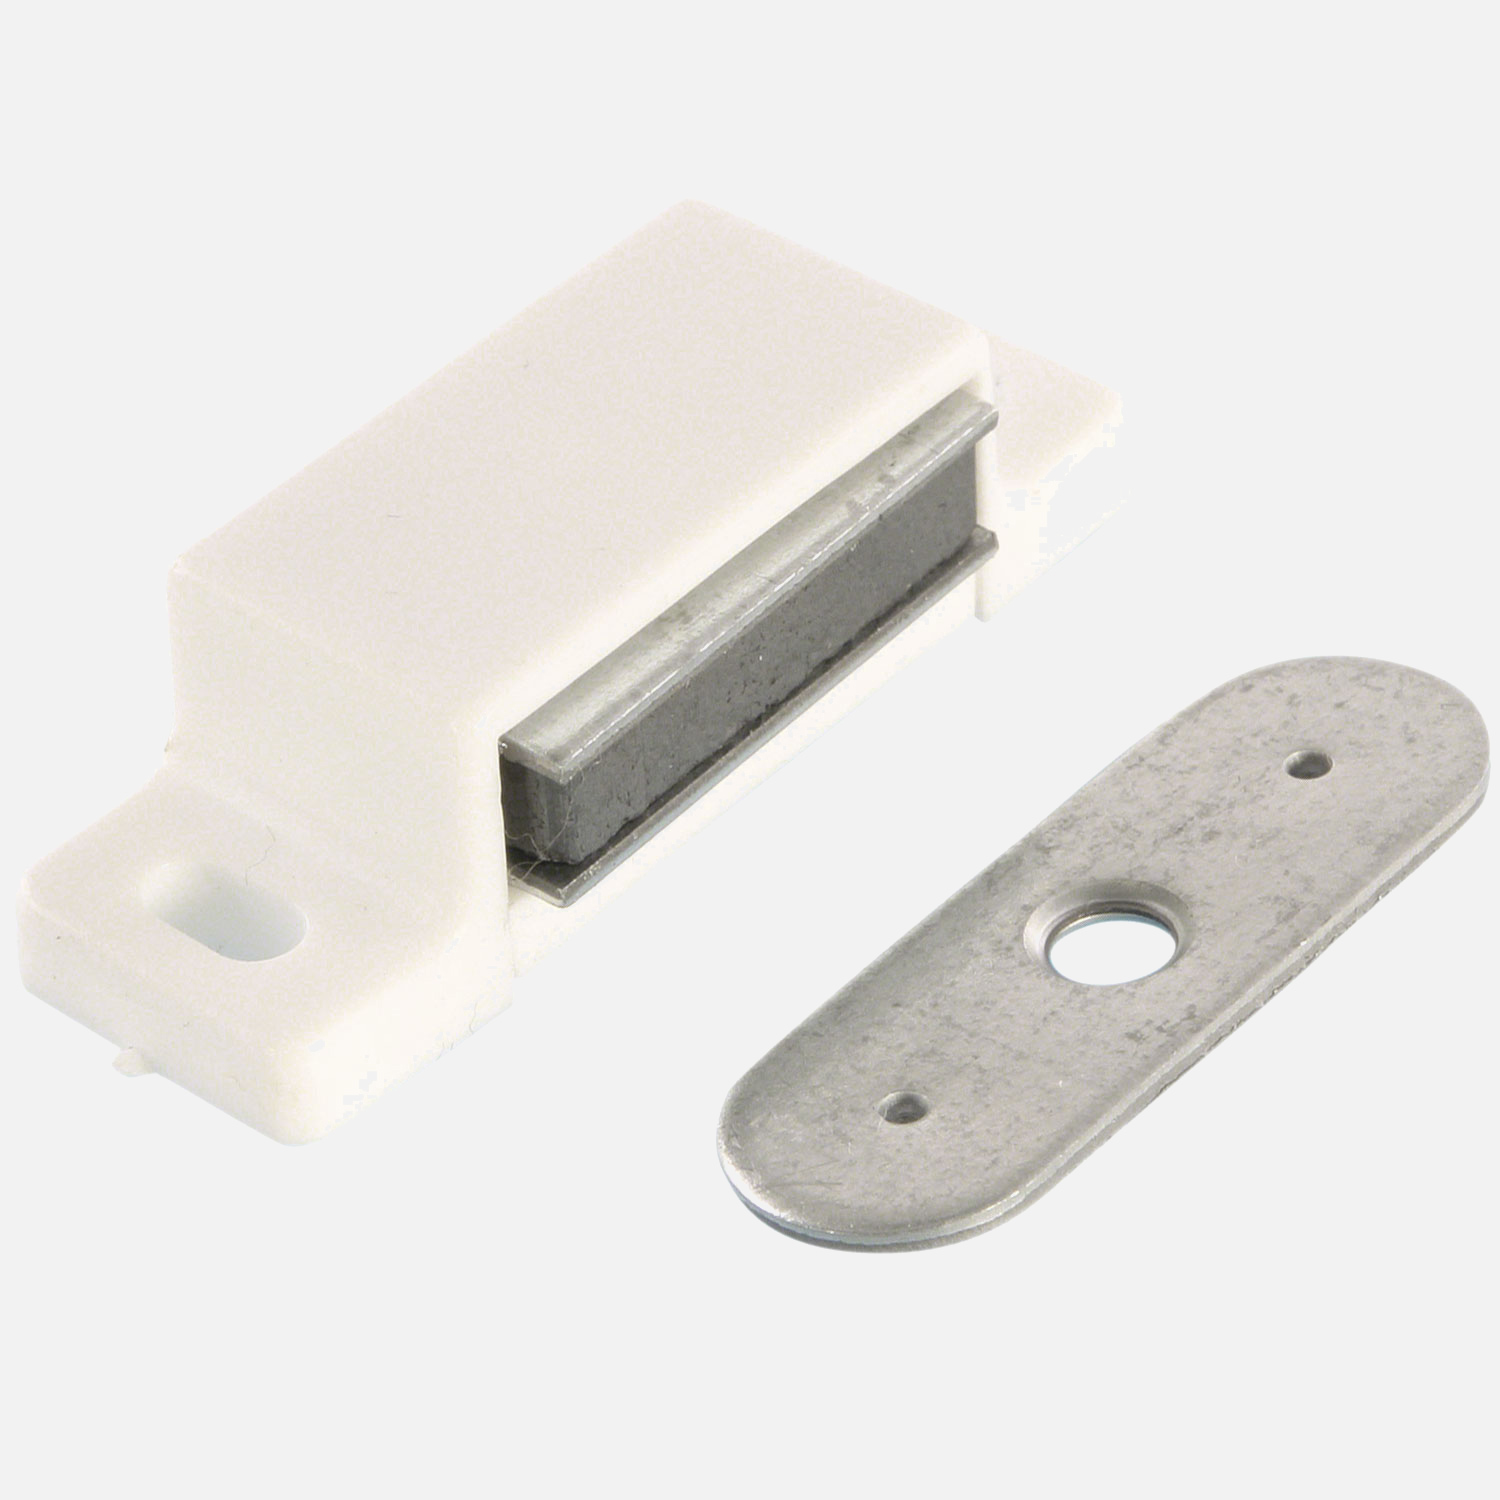 1 HSI Magnetschnäpper - mit fester Platte - weiß - Haftkraft 4kg